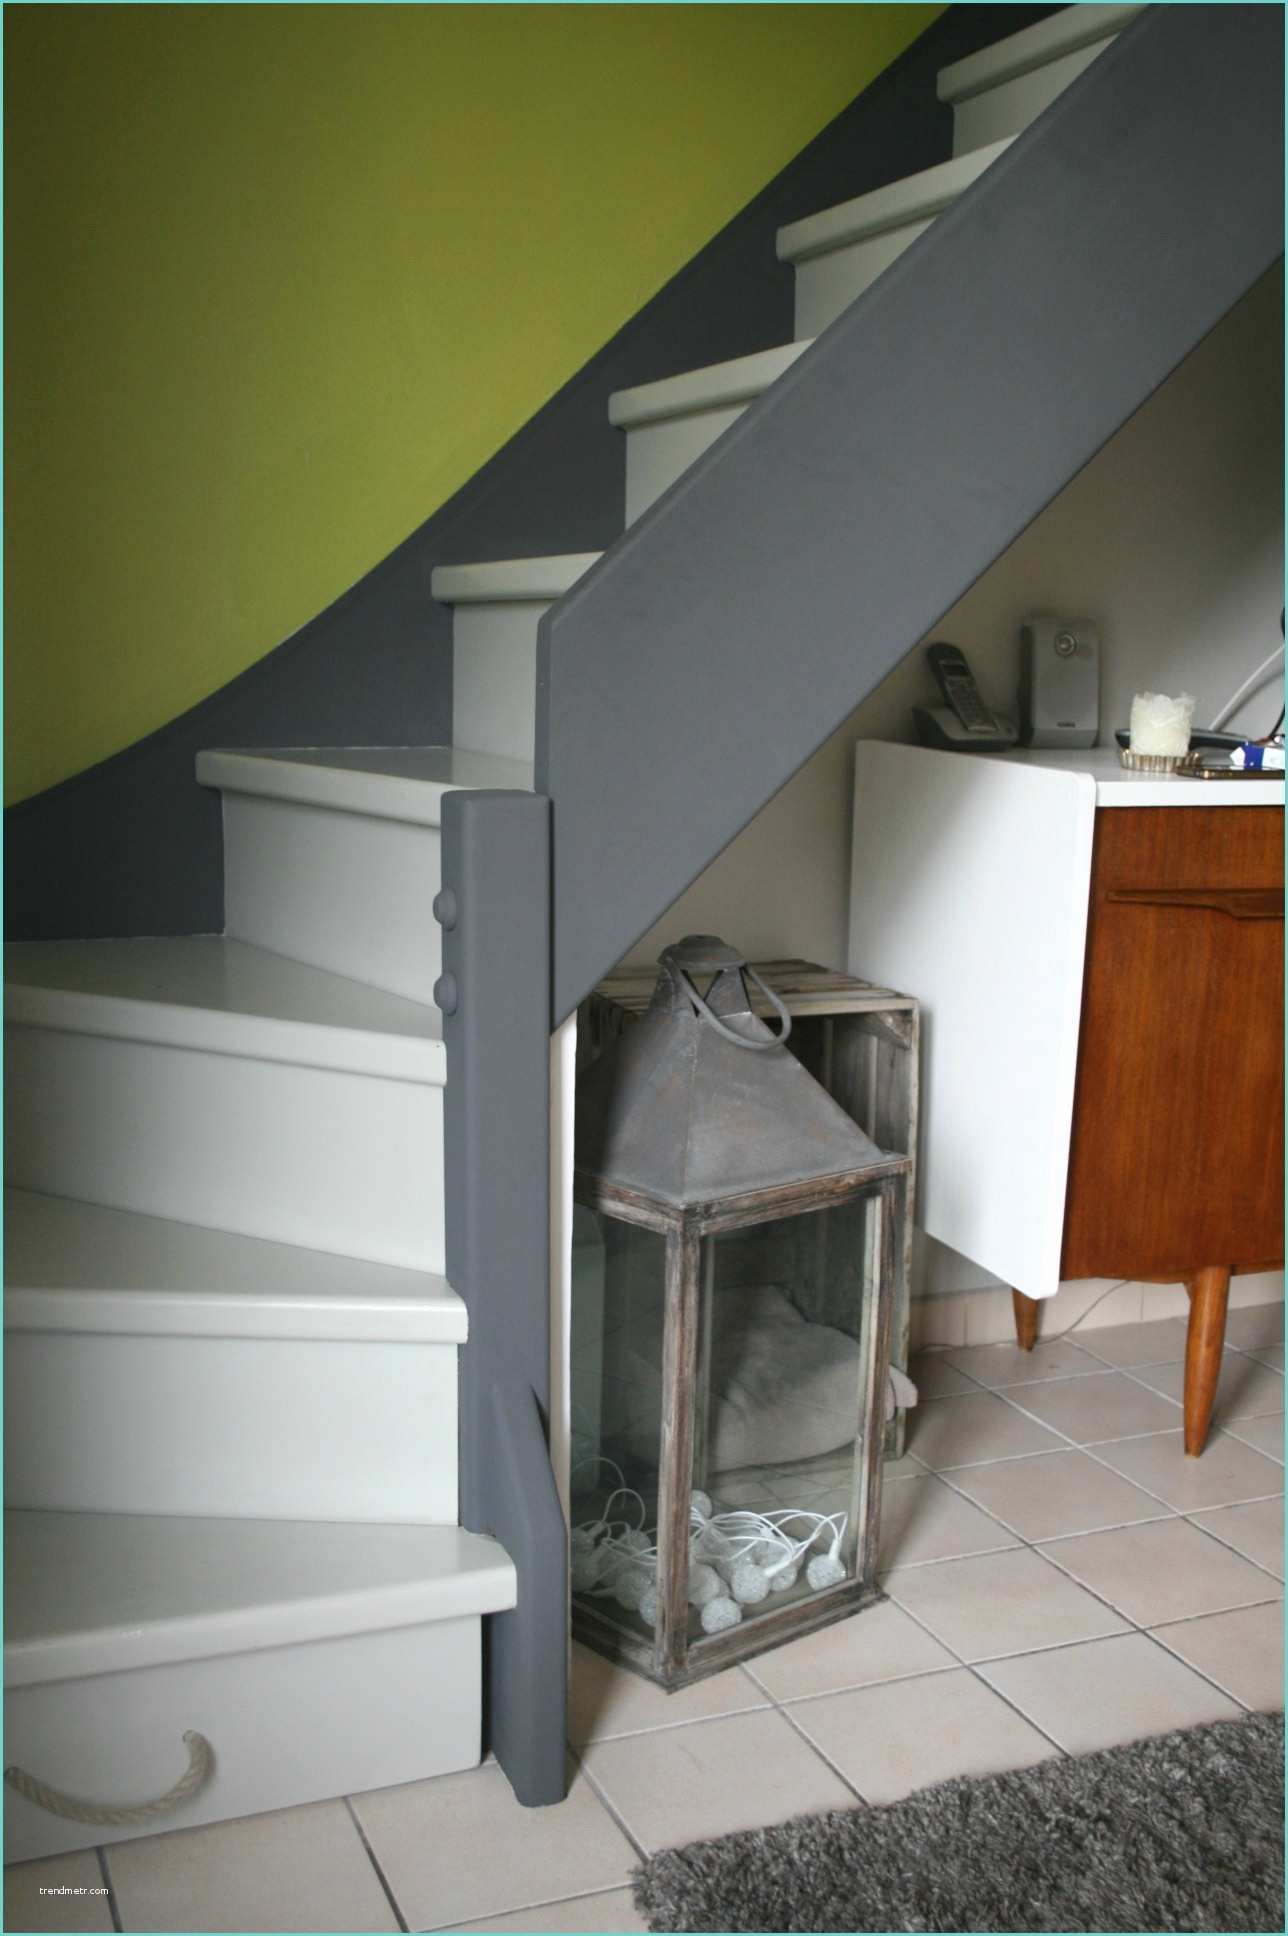 Escalier Repeint En Blanc Escalier Peint N°17 L atelier